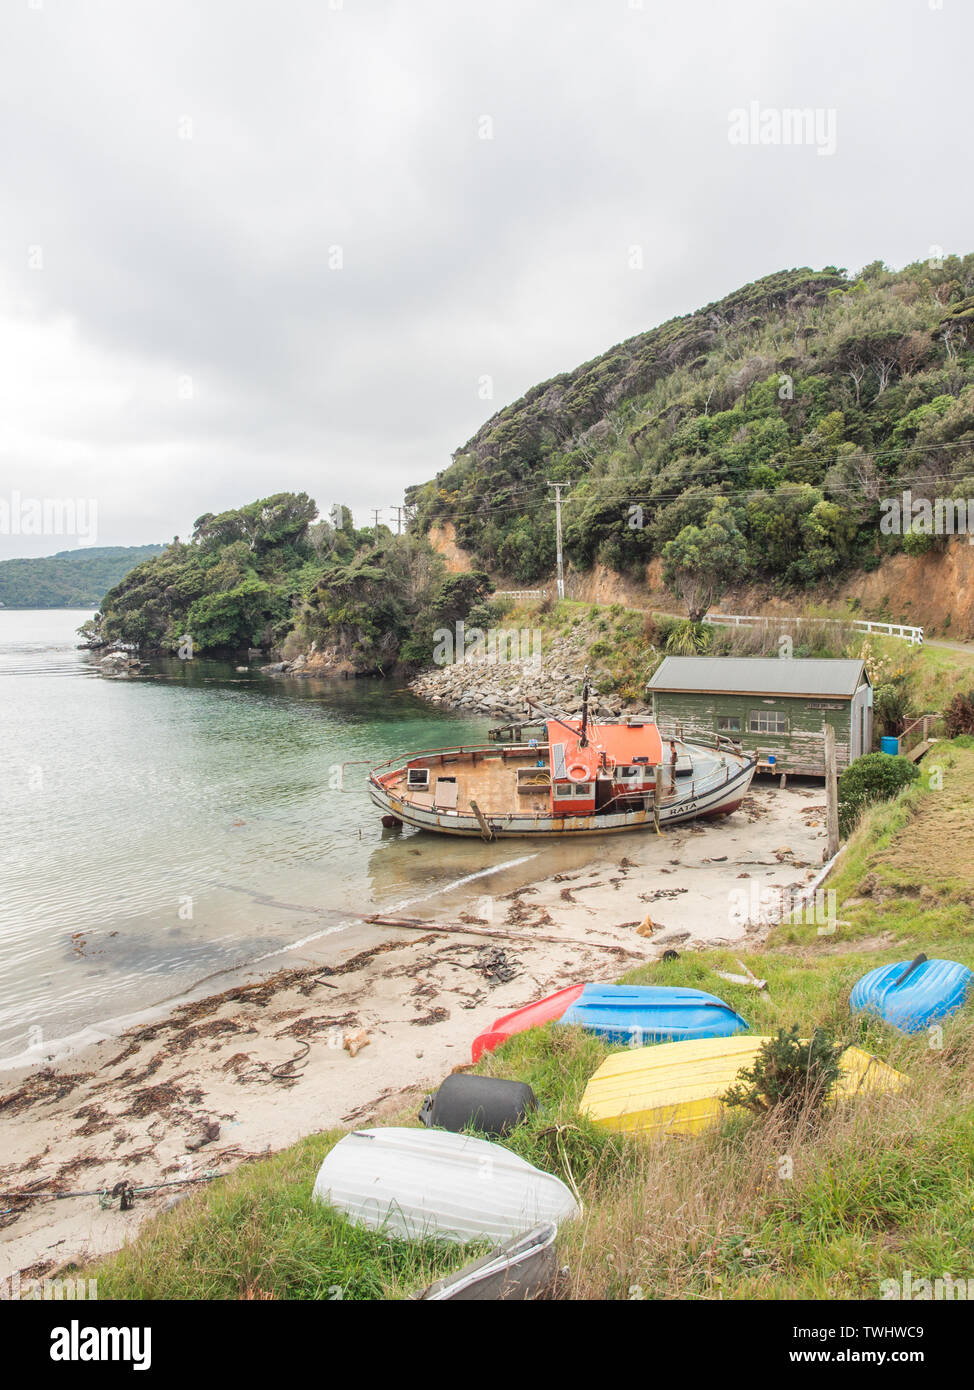 En carène de bateau de pêche colorés et dériveurs, Leask Bay, Oban, Rakiura Stewart Island, New Zealand Banque D'Images